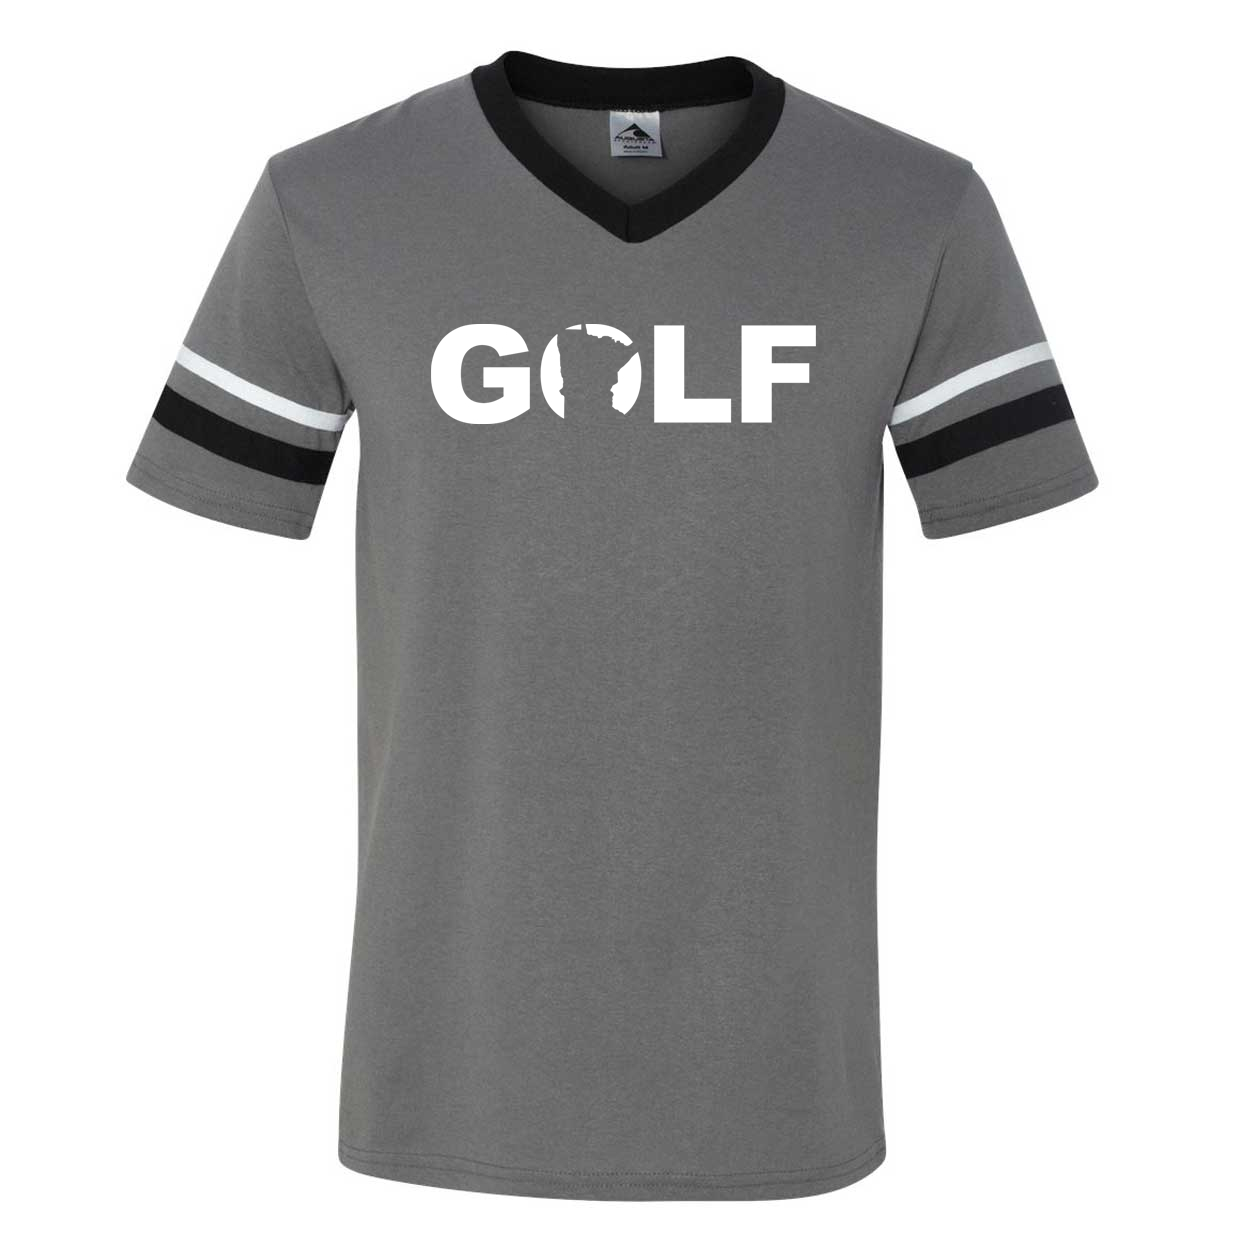 Golf Minnesota Classic Premium Striped Jersey T-Shirt Graphite/Black/White (White Logo)